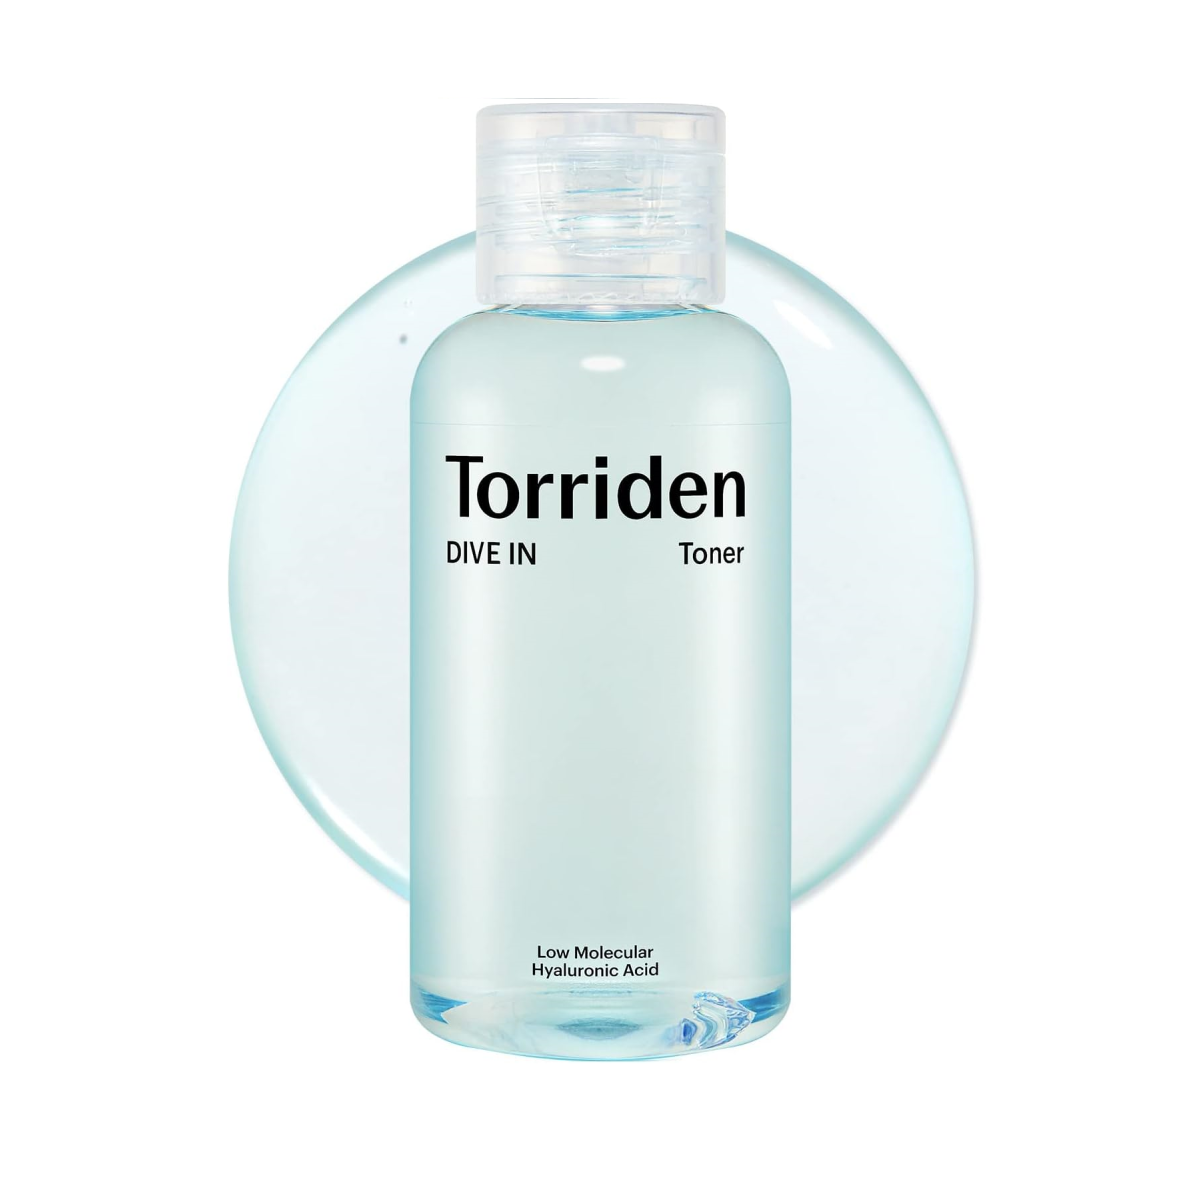 TORRIDEN DIVE-IN Low Molecular Hyaluronic Acid Toner Mini